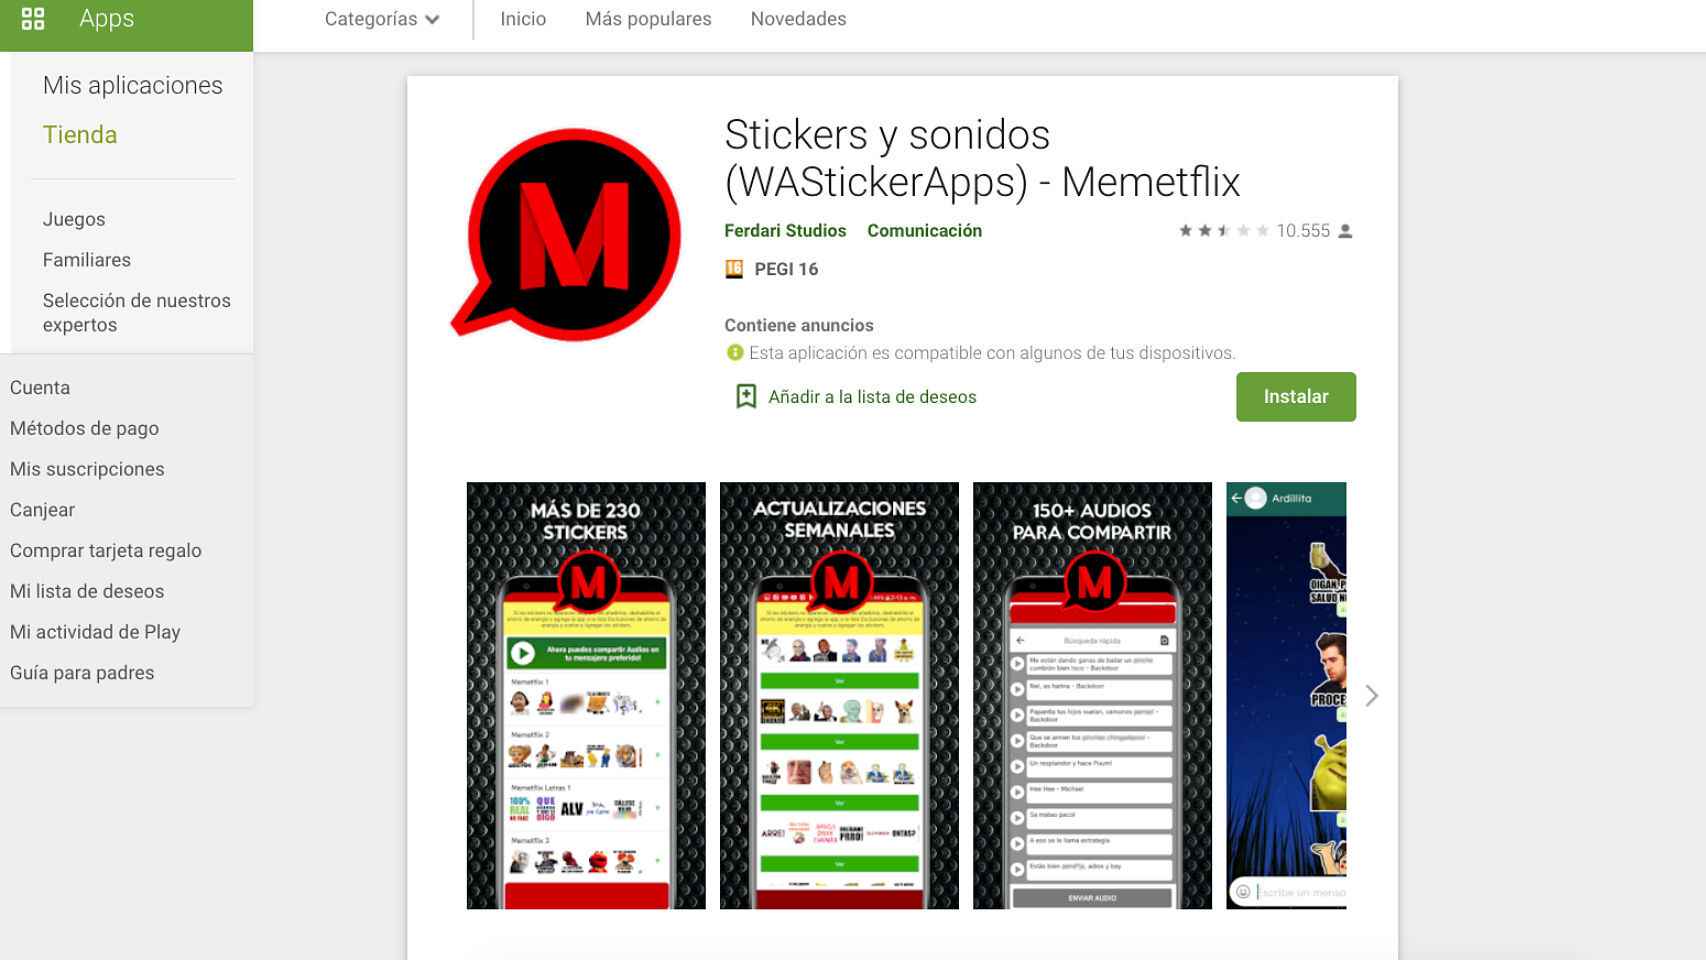 App de stickers y sonidos para WhatsApp.